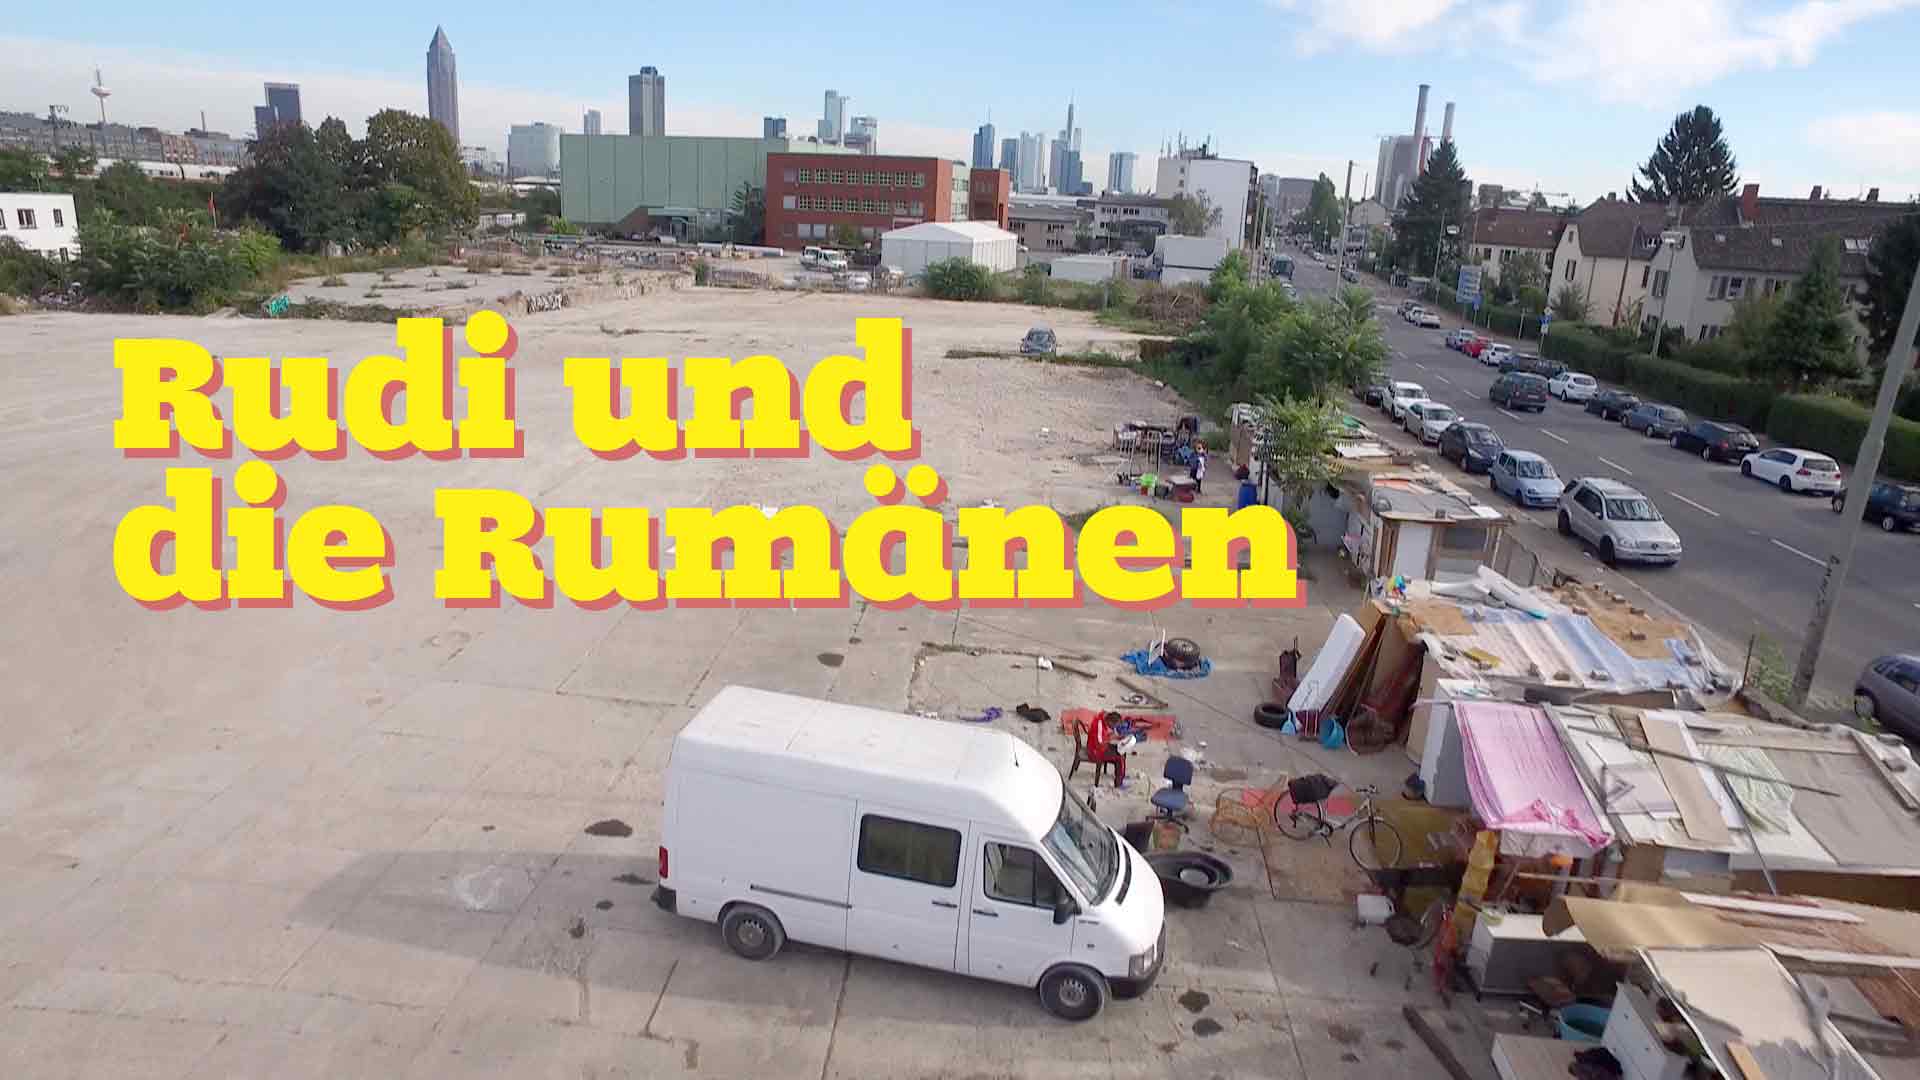 Rudi und die Rumänen